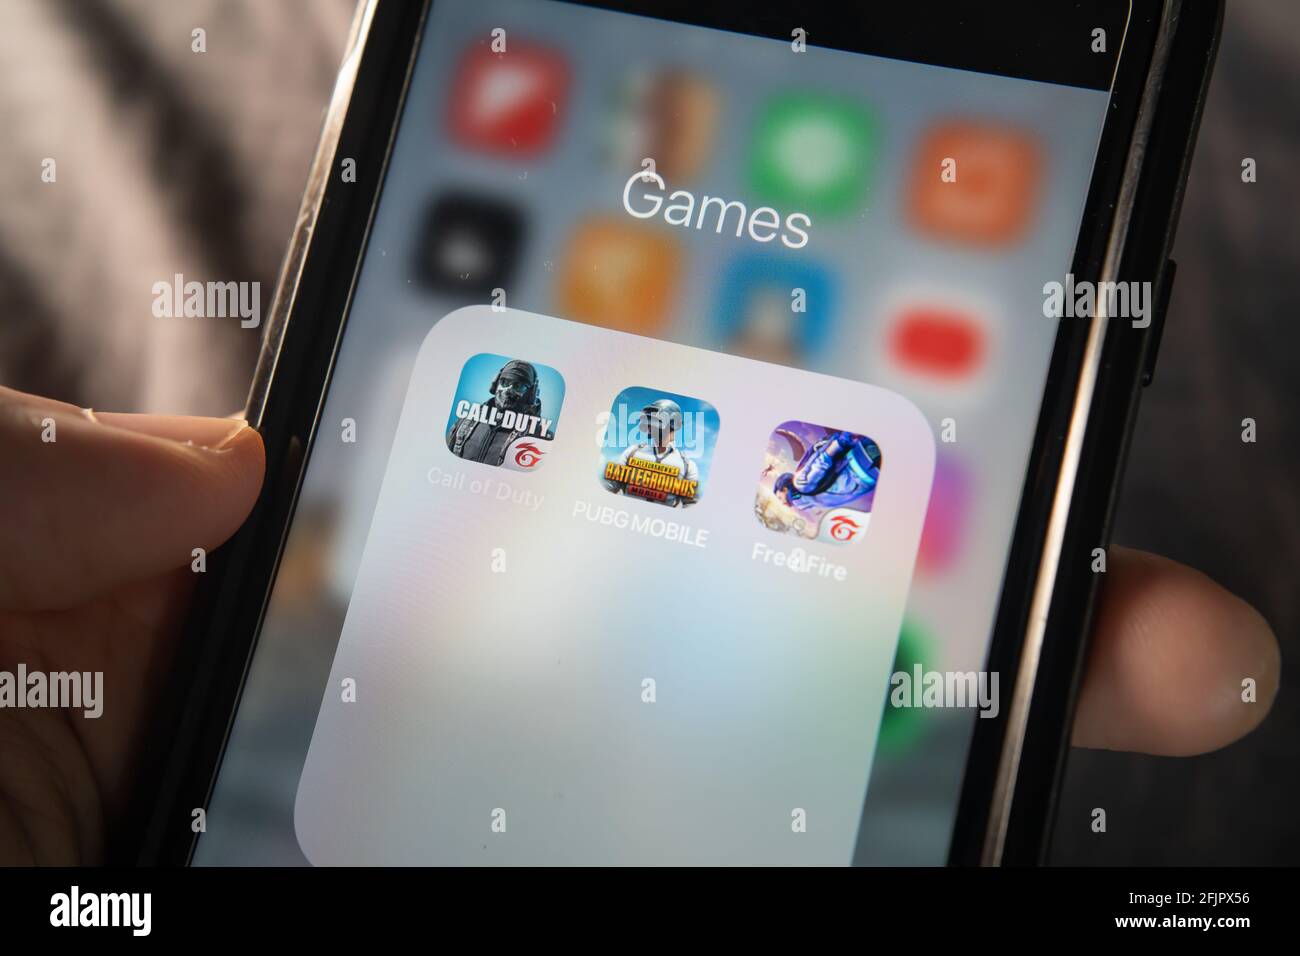 Bangkok, Thailandia - 17 Aprile 2021 : iPhone 7 che mostra il suo schermo con i giochi di tiro popolari che sono Call of Duty mobile, PUBG mobile e Free Fire. Foto Stock